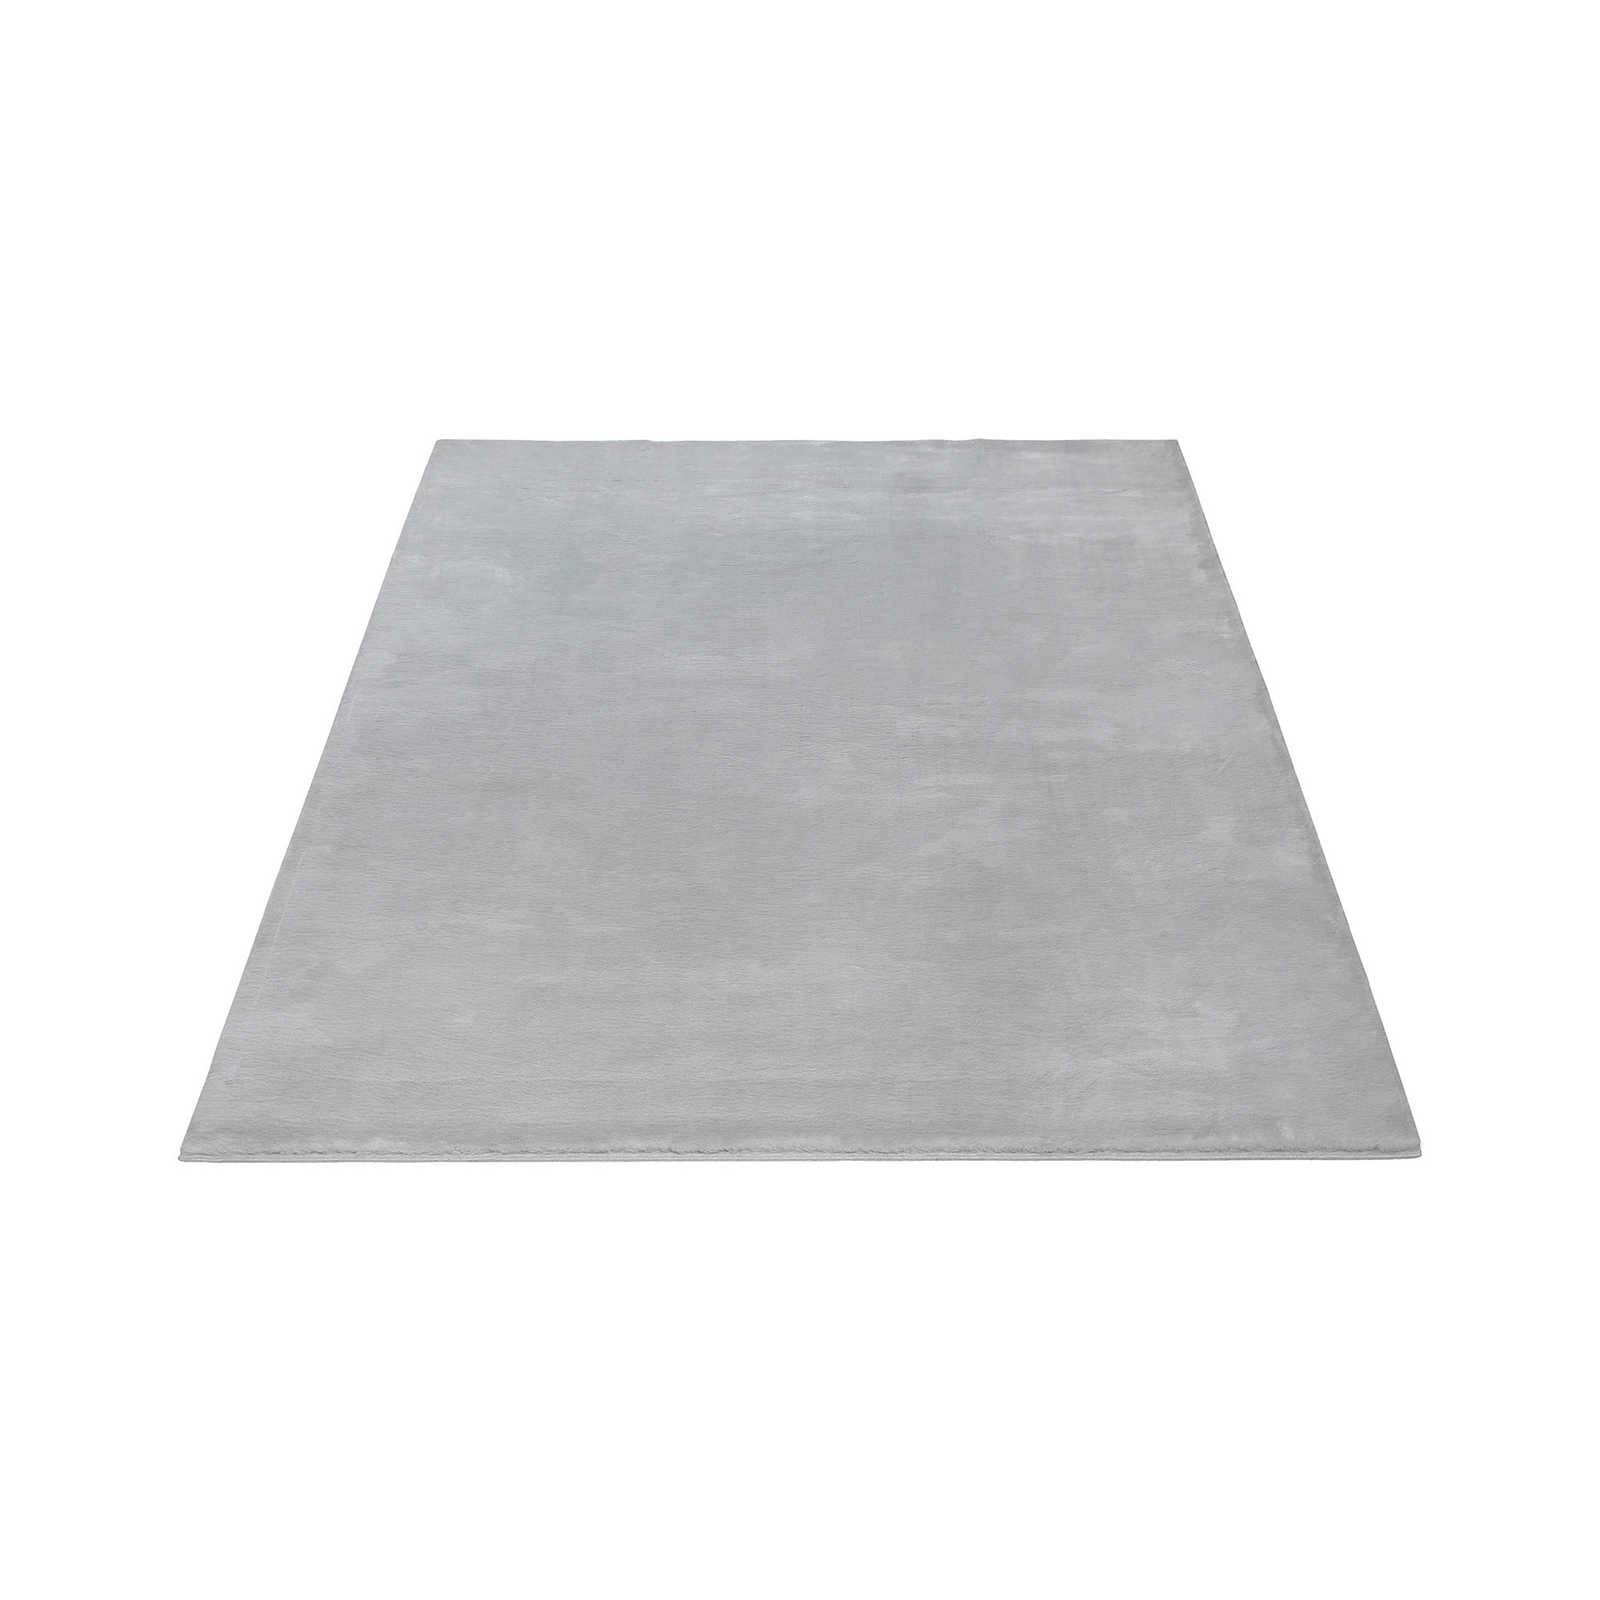 Kuscheliger Hochflor Teppich in sanften Grau – 230 x 160 cm
